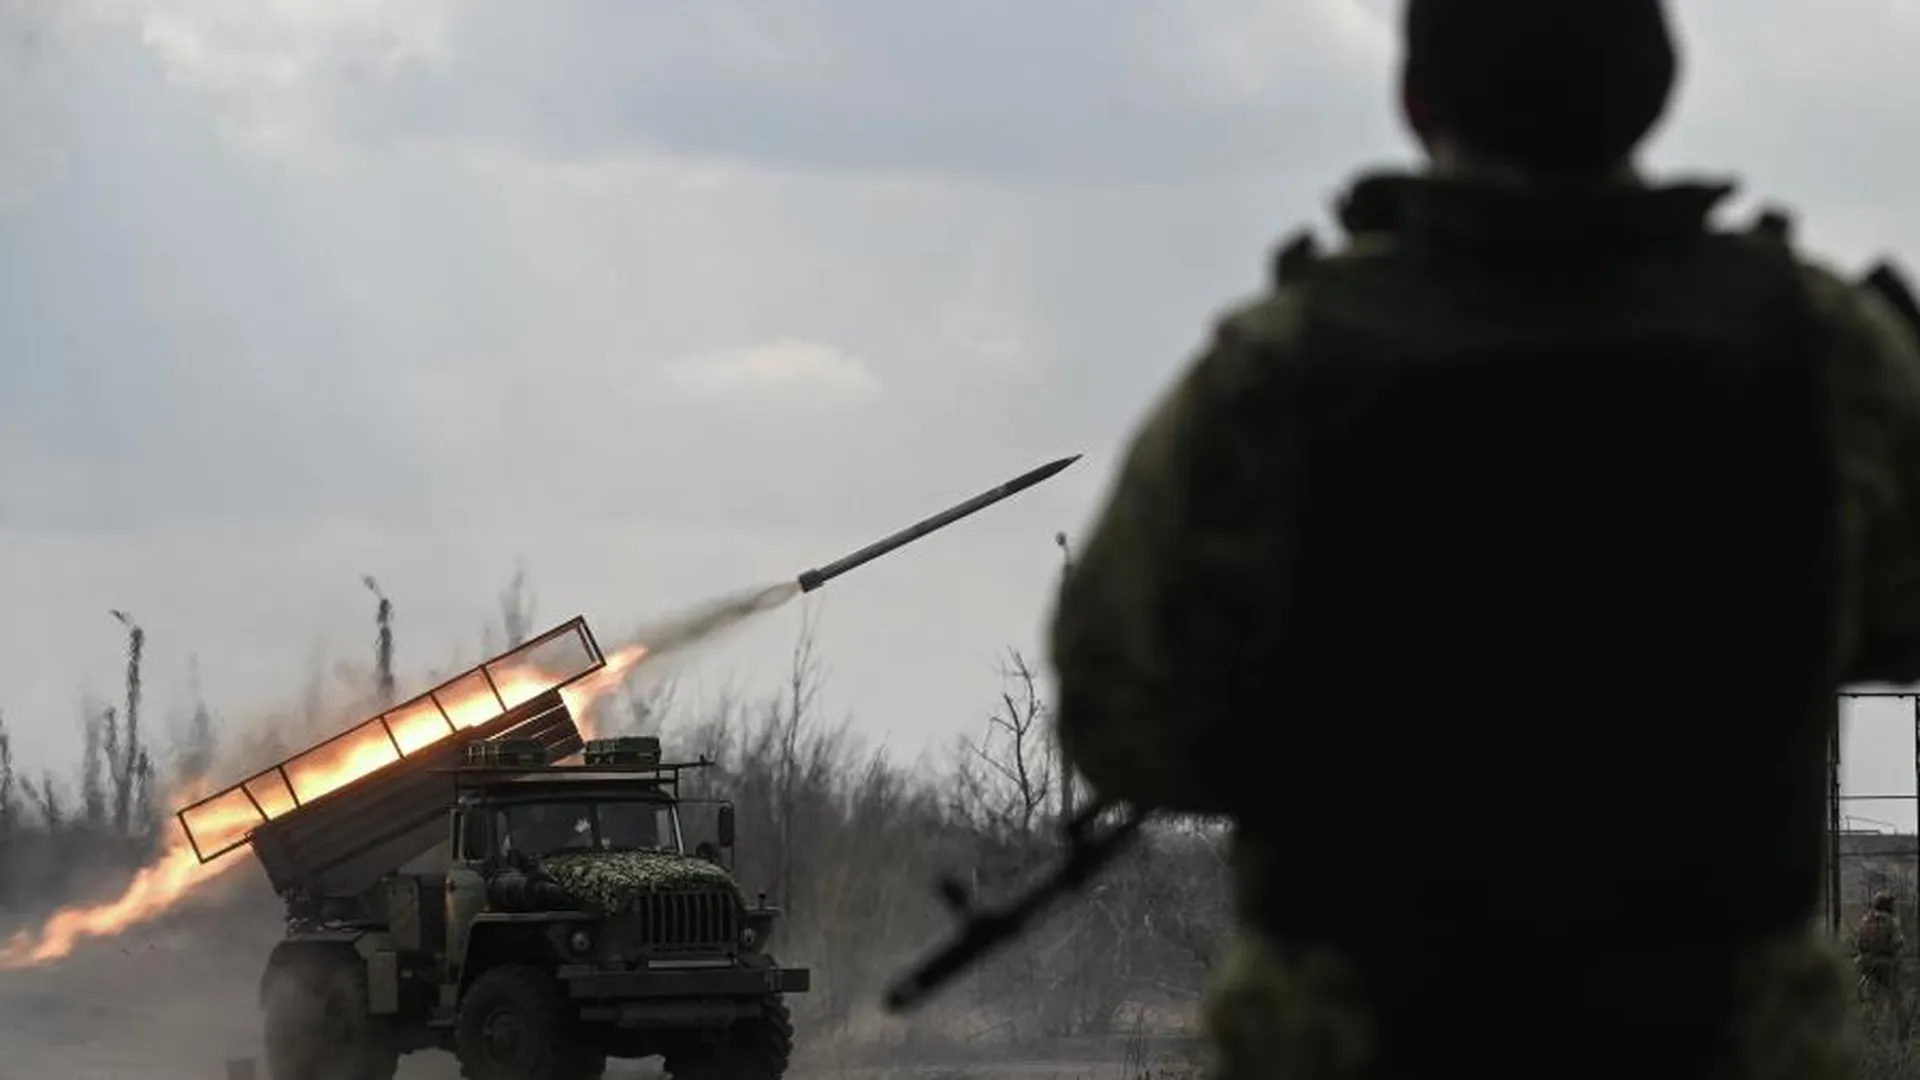 Рогов: ВС РФ нанесли ракетные удары по инфраструктуре ДнепроГЭС в Запорожье